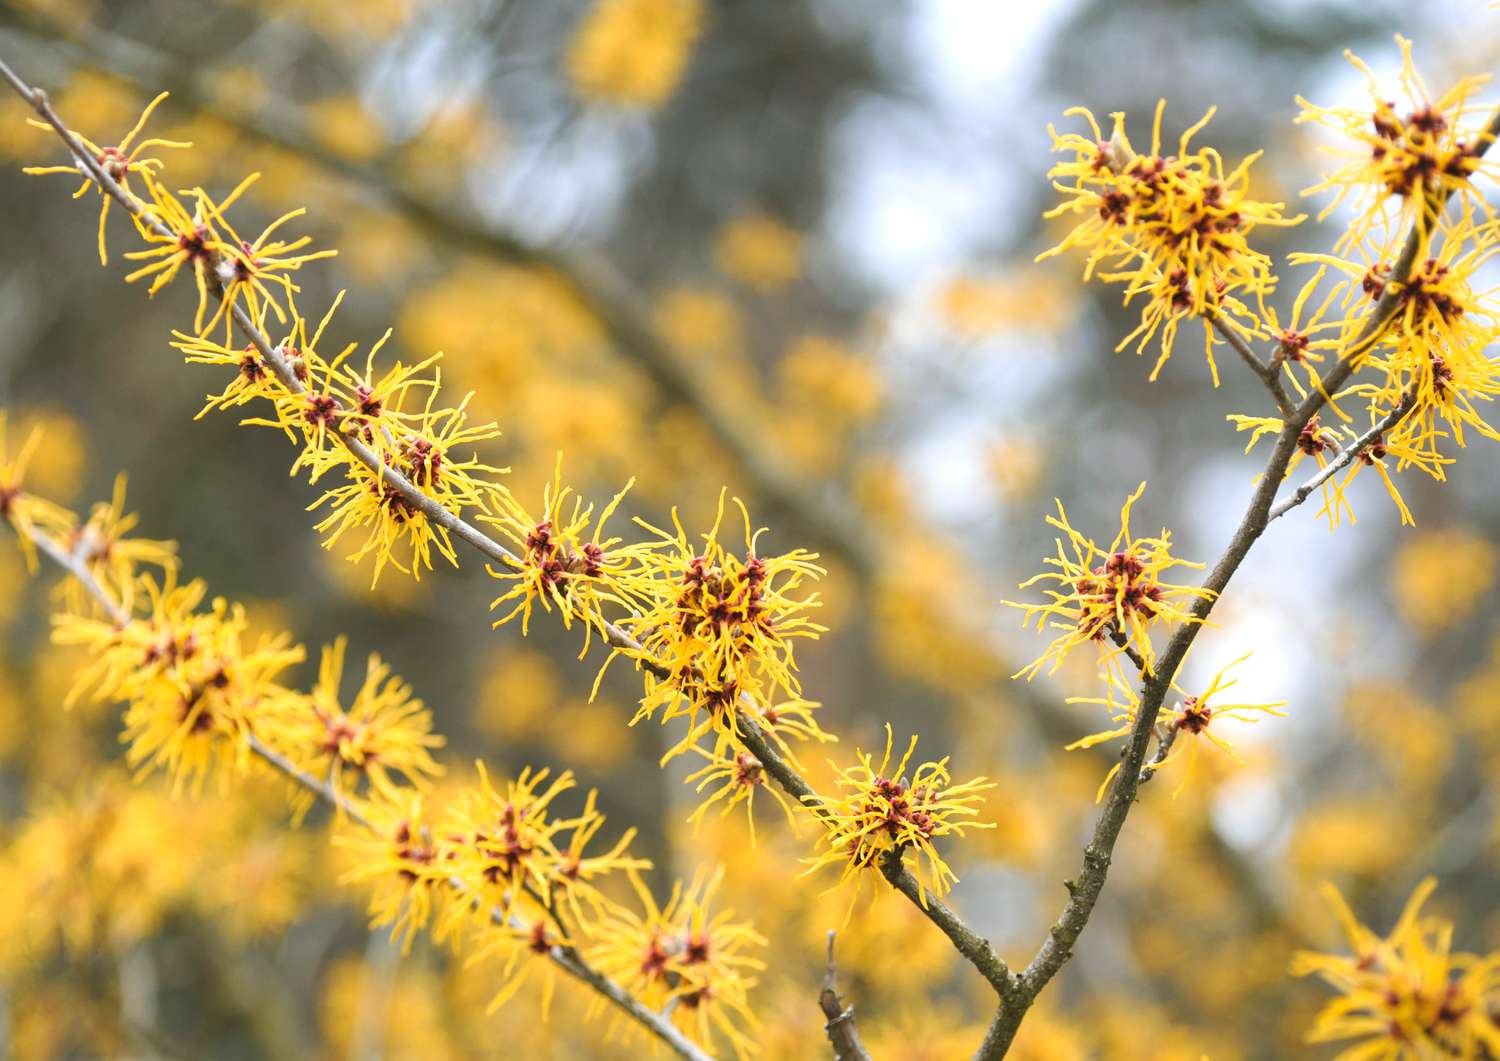 Mollis Zaubernuss mit stacheligen gelben Blüten an den Zweigen